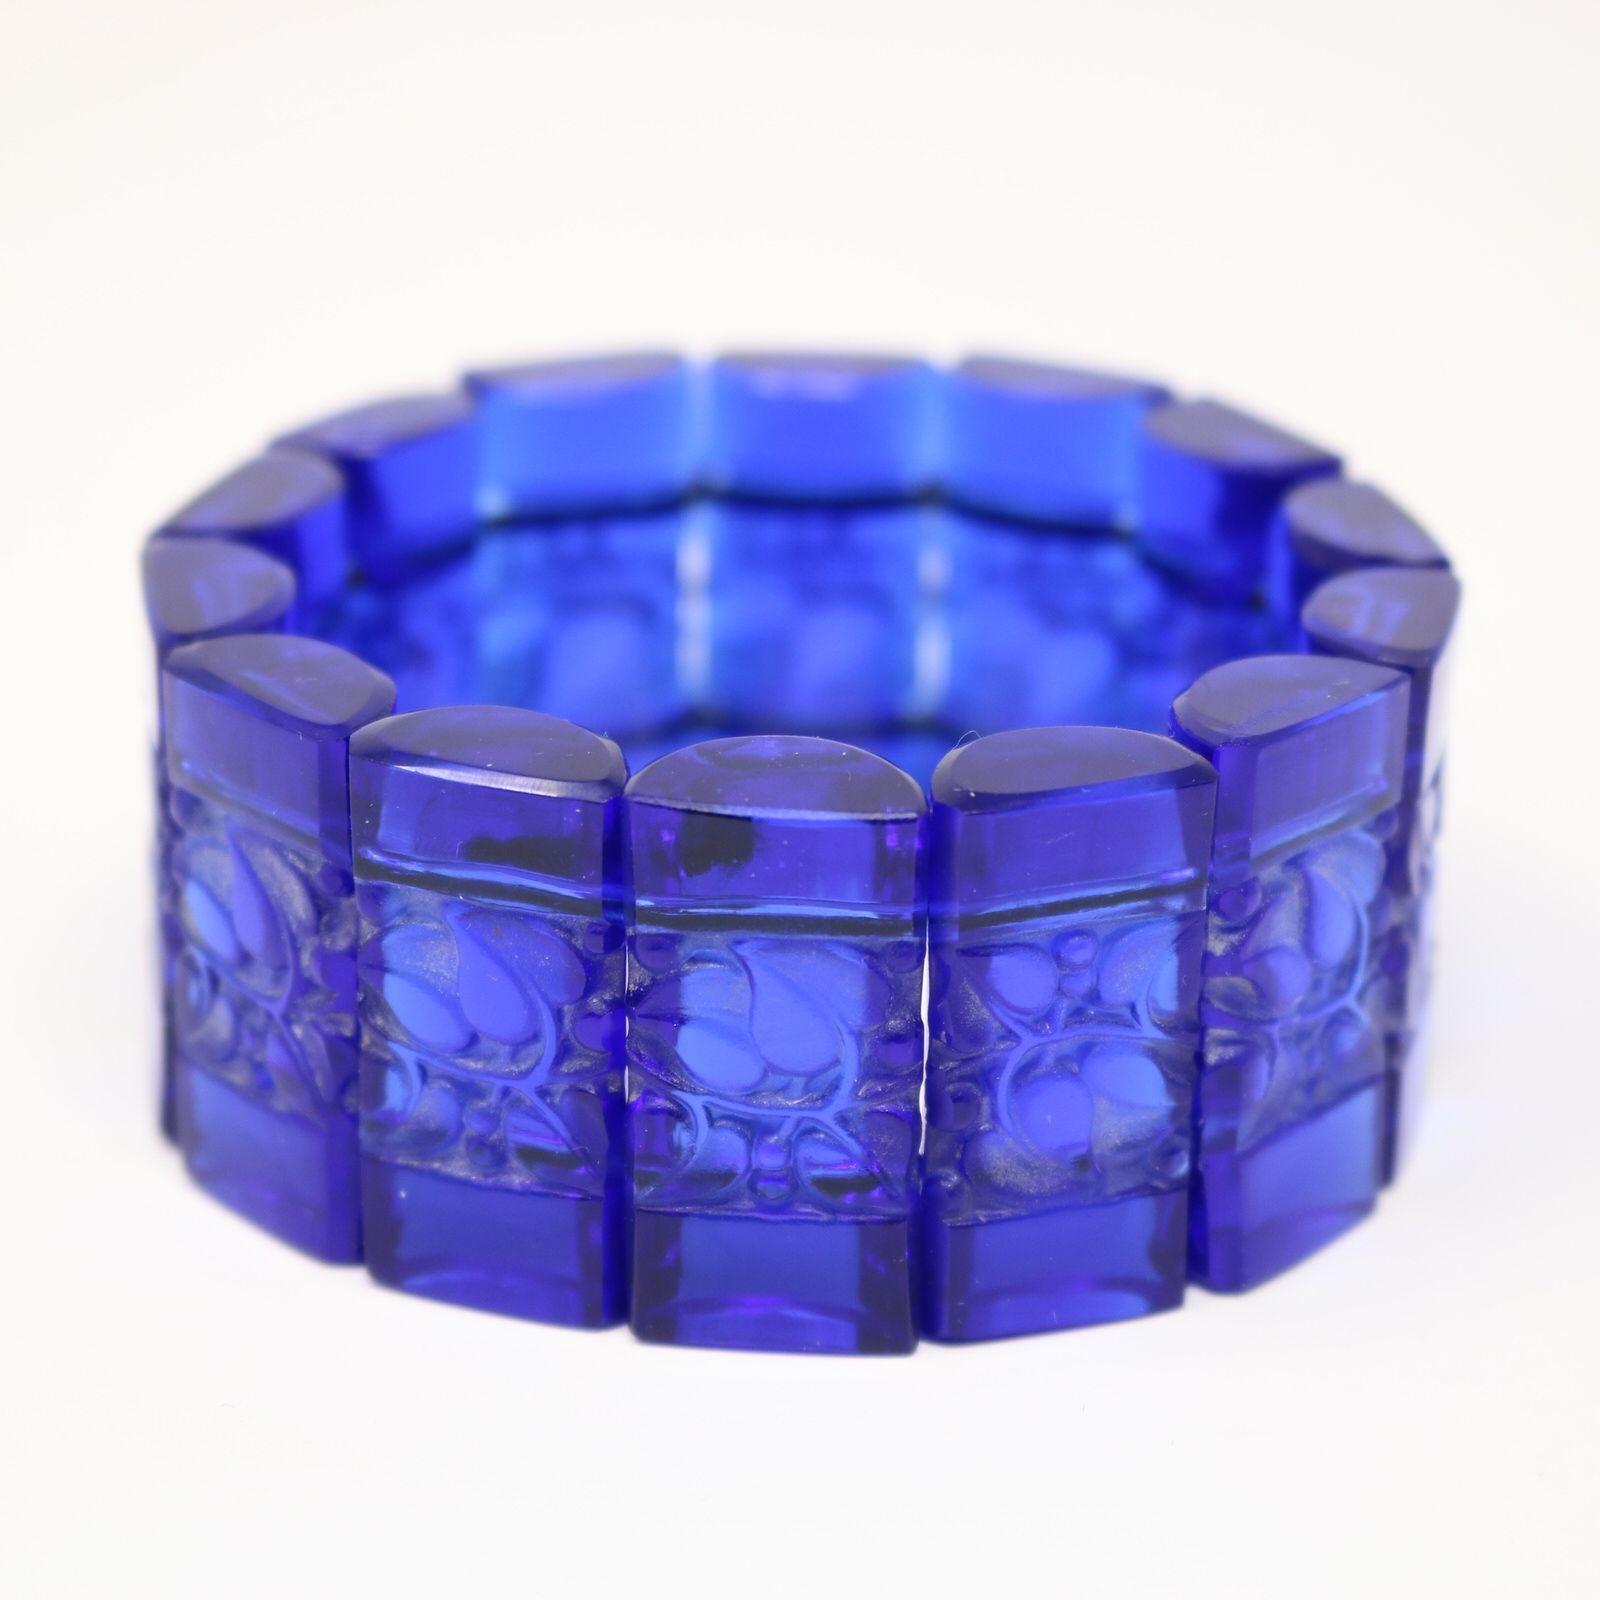 Armband aus blauem Glas 'Ceriser' von Rene Lalique. Das Armband besteht aus 14 rechteckigen, zylinderförmigen Tabletten, die mit einem Gummiband aneinandergereiht sind. Ceriser ist französisch für Kirschbaum und jede Tablette hat geformte Blätter